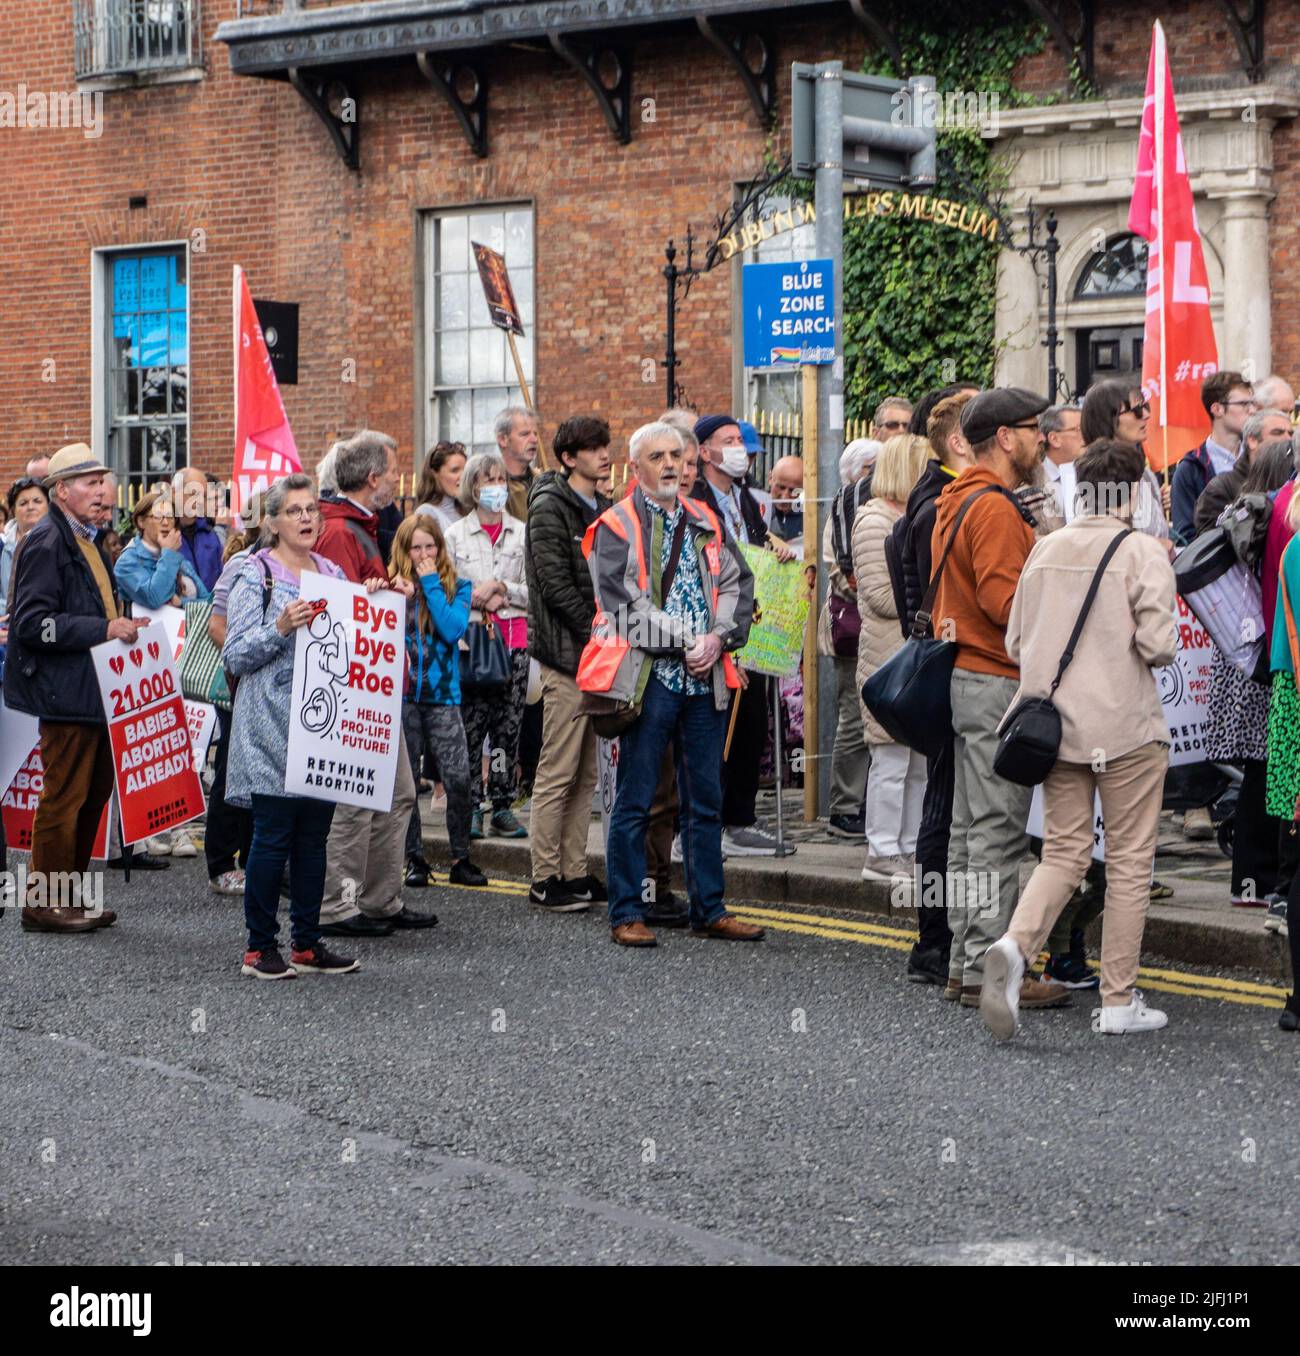 Eine Pro-Life-Kundgebung auf dem Parnell Square in Dublin, Irland. Ein Poster bezieht sich auf den Fall Roe V Wade, der kürzlich vom Obersten Gerichtshof der USA gestrichene Fall. Stockfoto